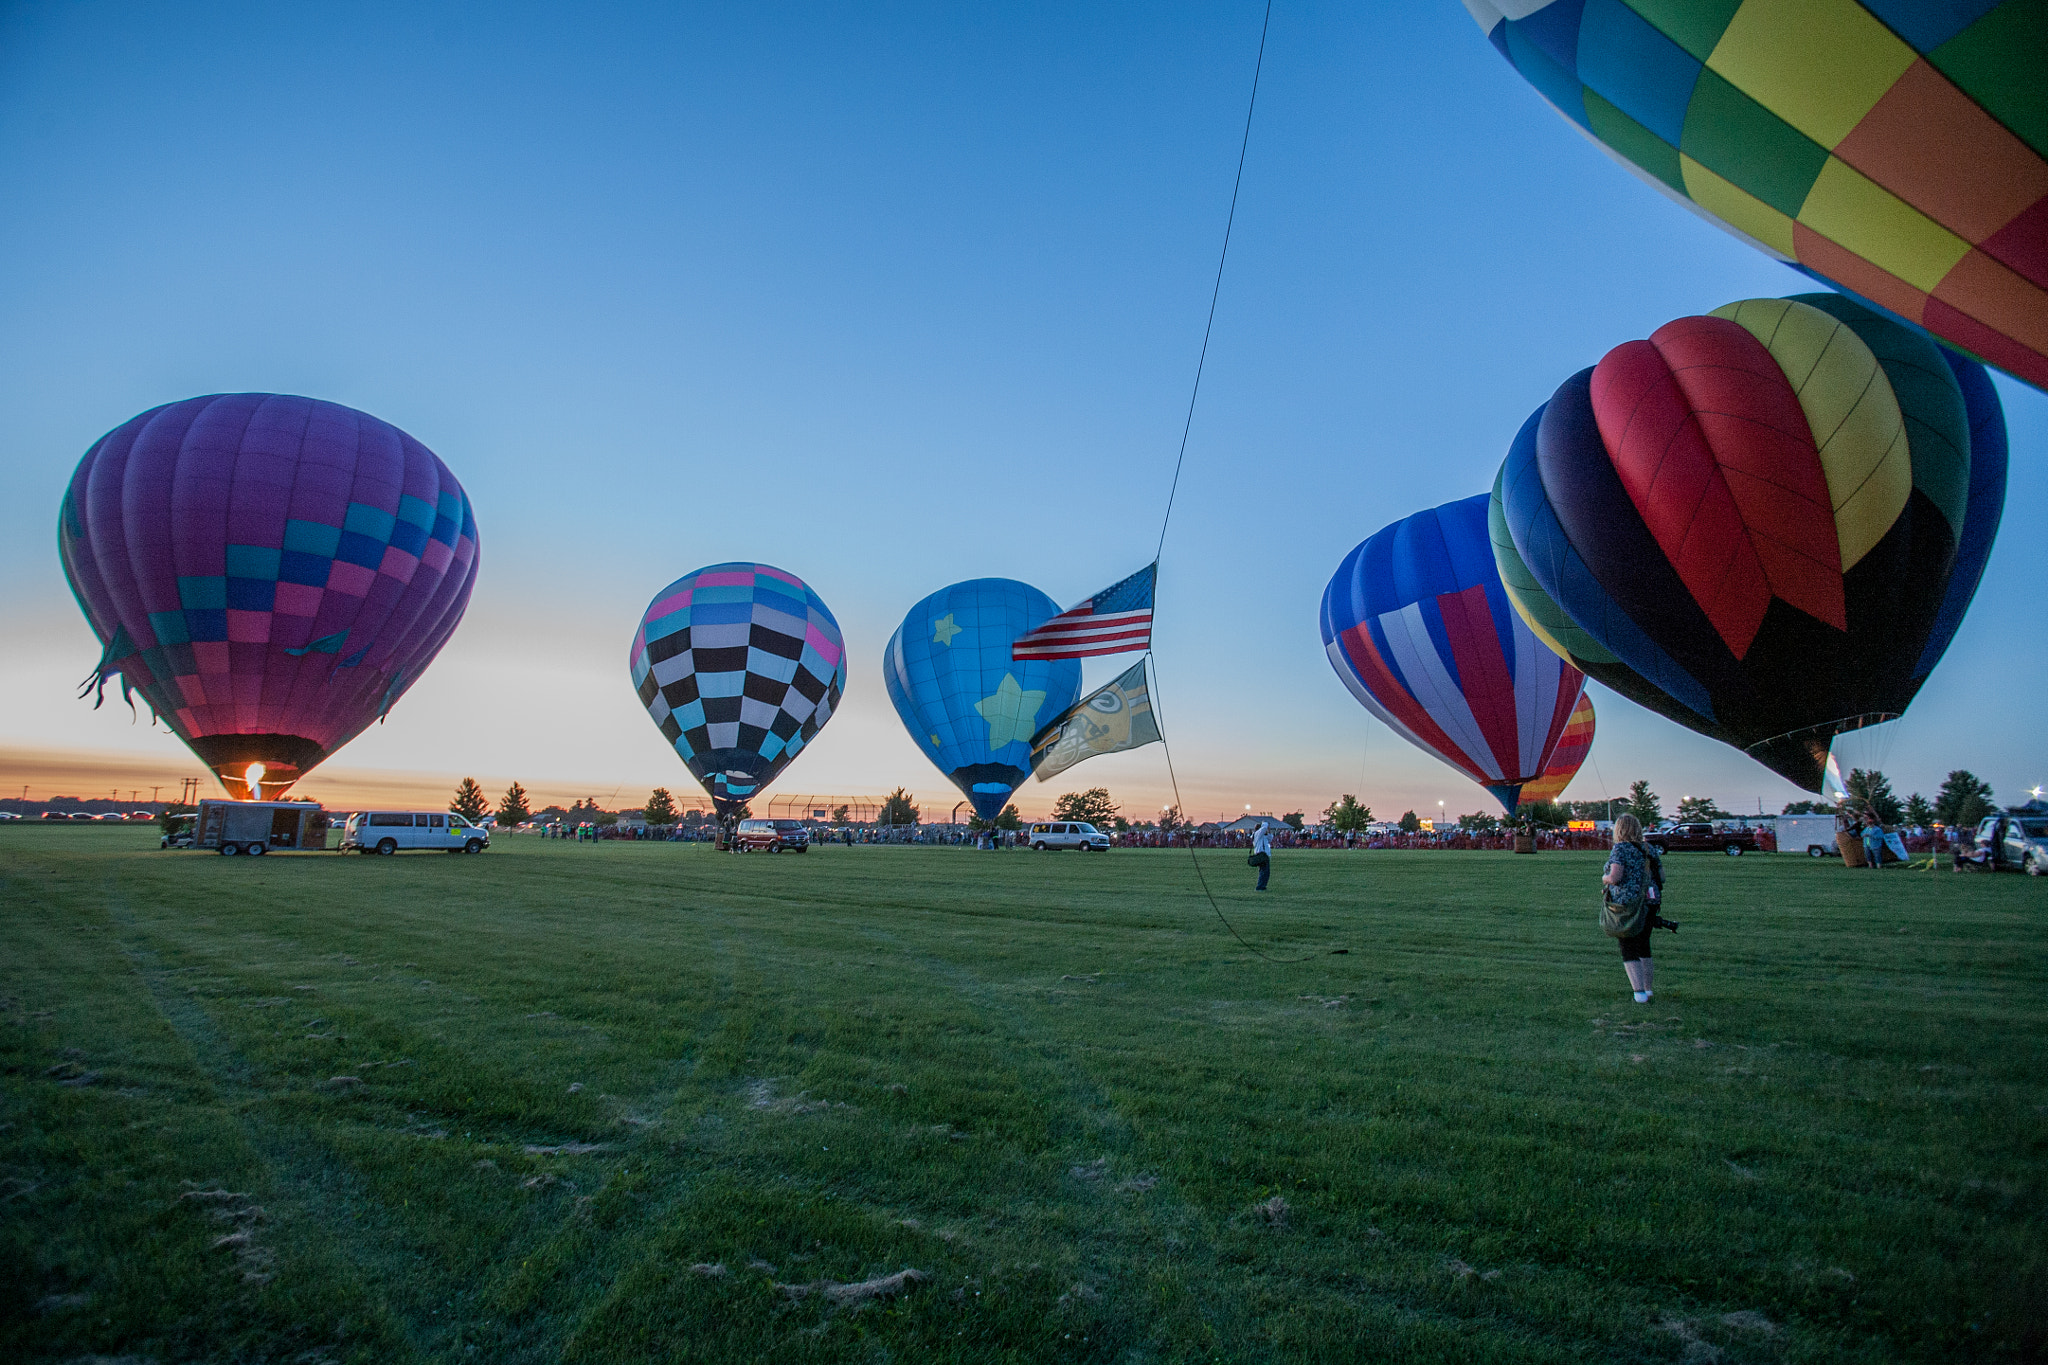 Canon EOS 5D sample photo. Harvard balloon festival photography